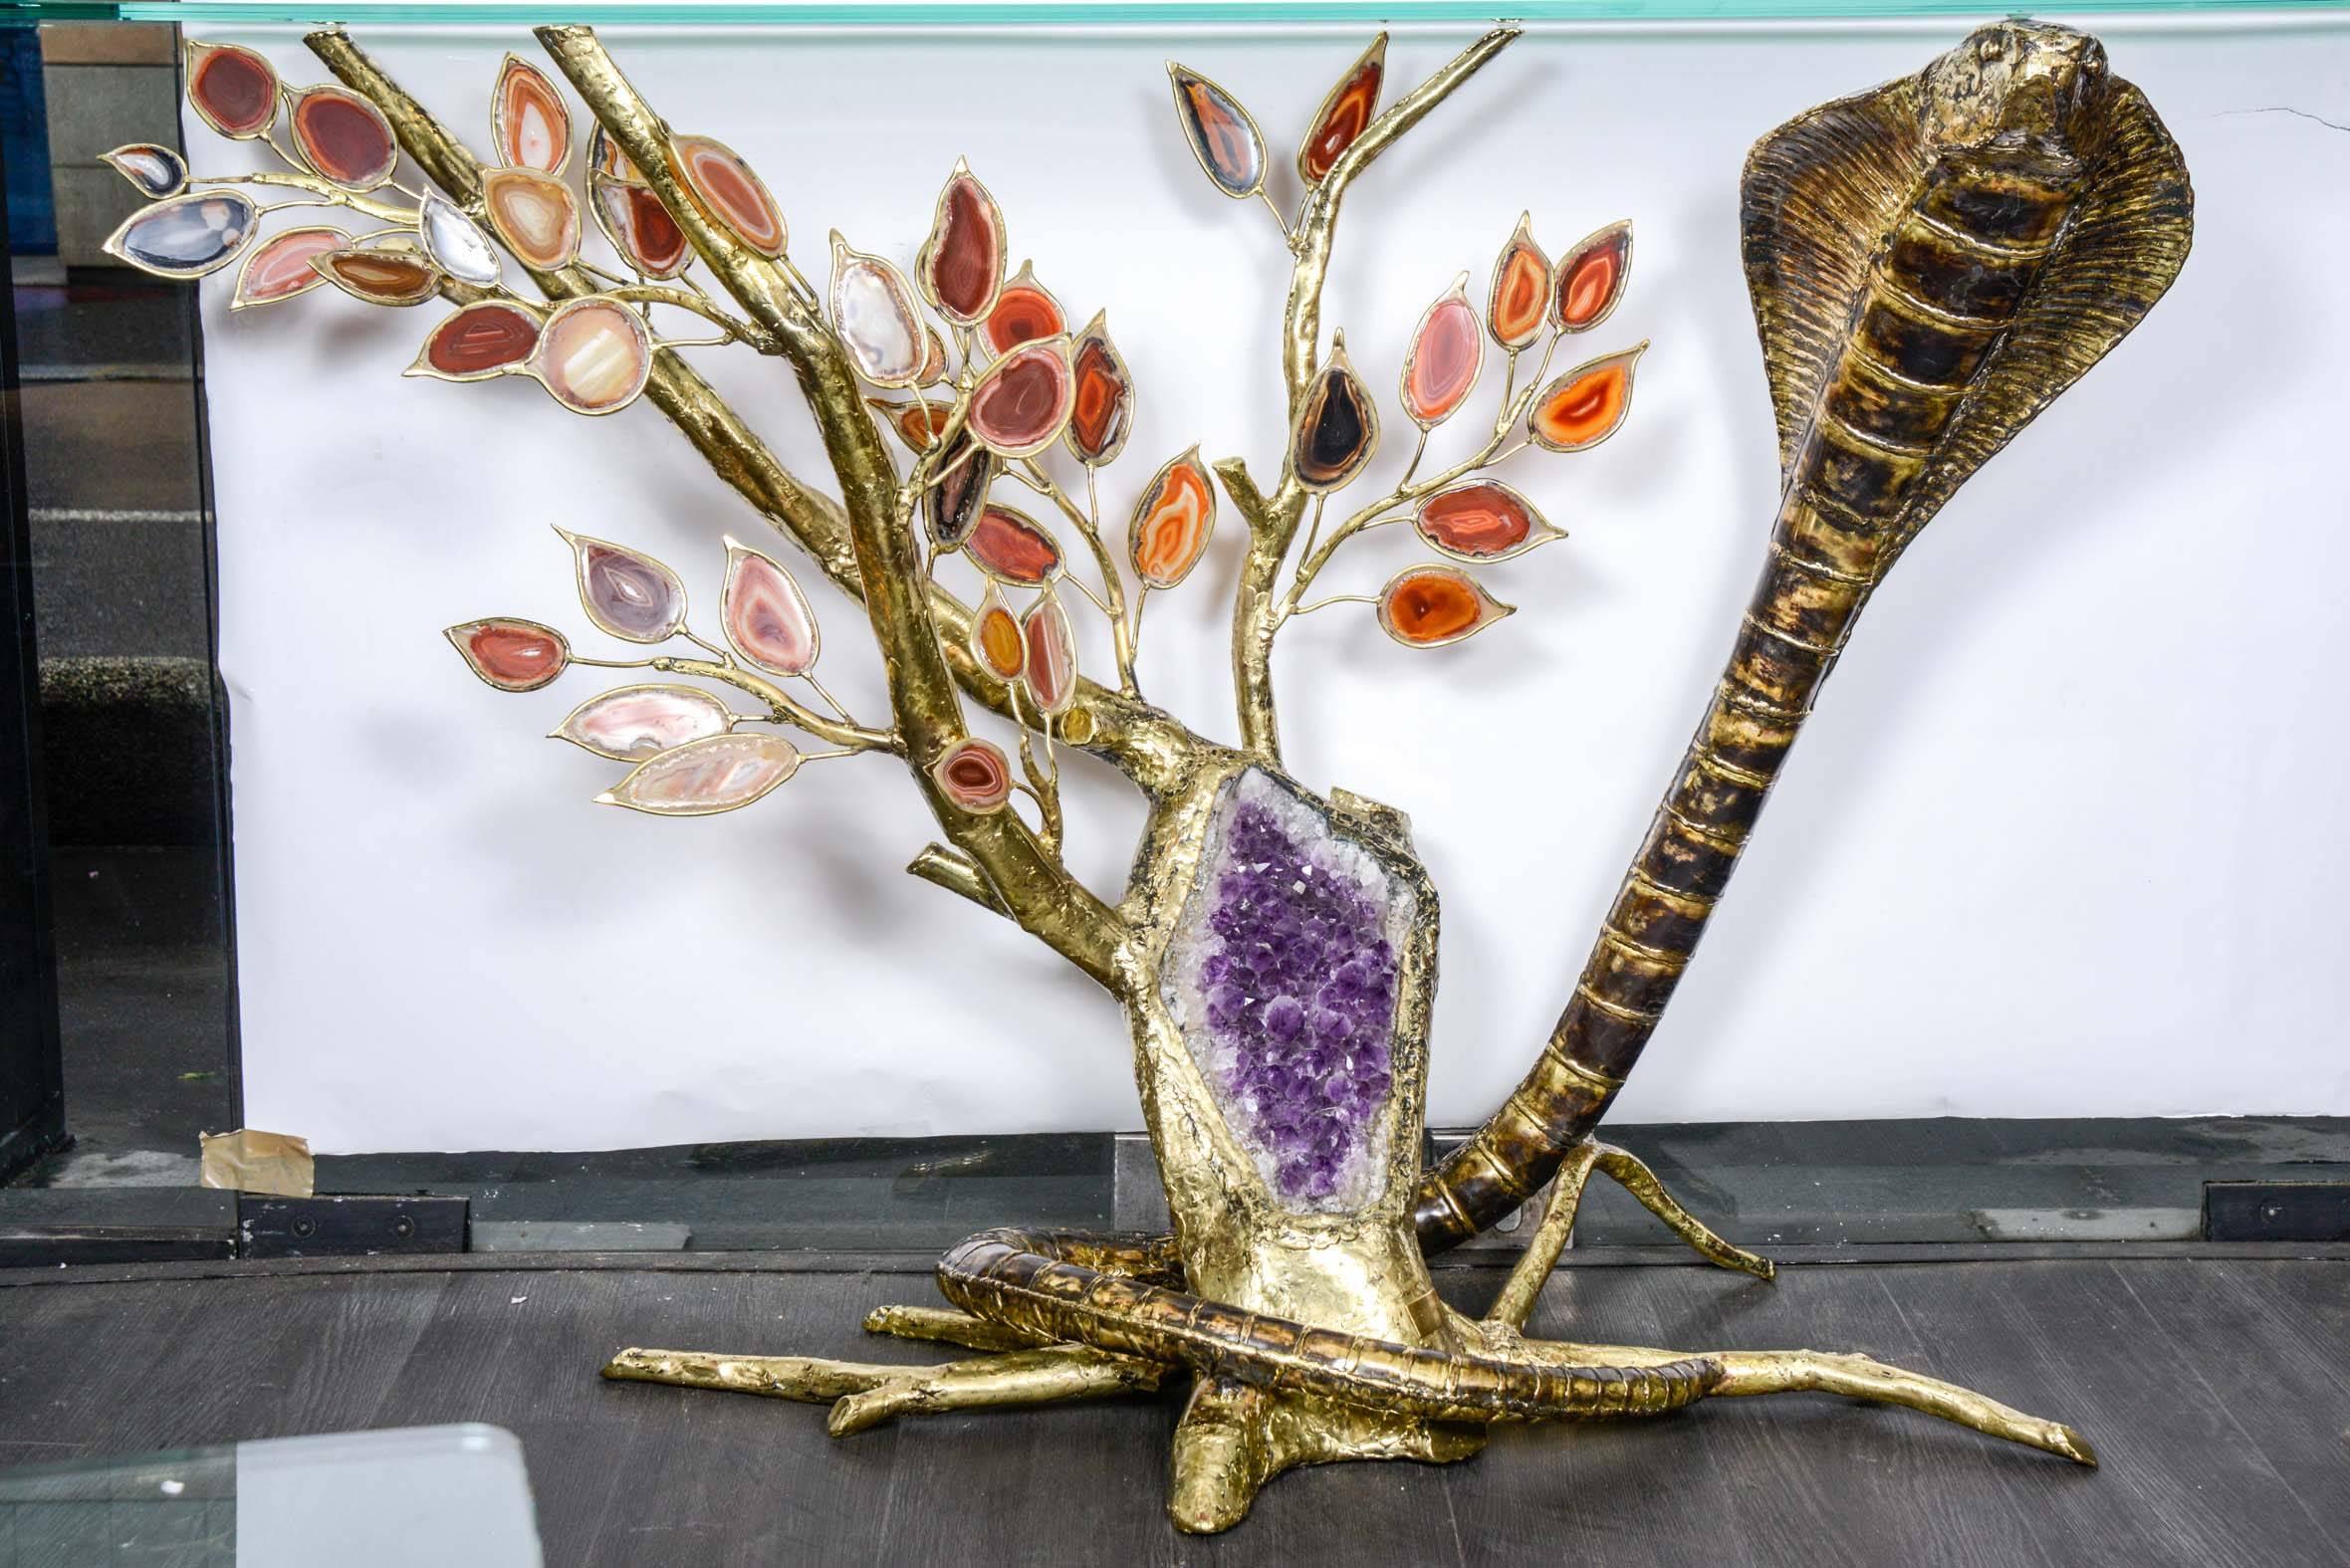 Console unique en son genre avec améthyste et agate montrant un serpent autour d'un arbre
signé.
Commandé en 1985 pour une résidence privée à Paris